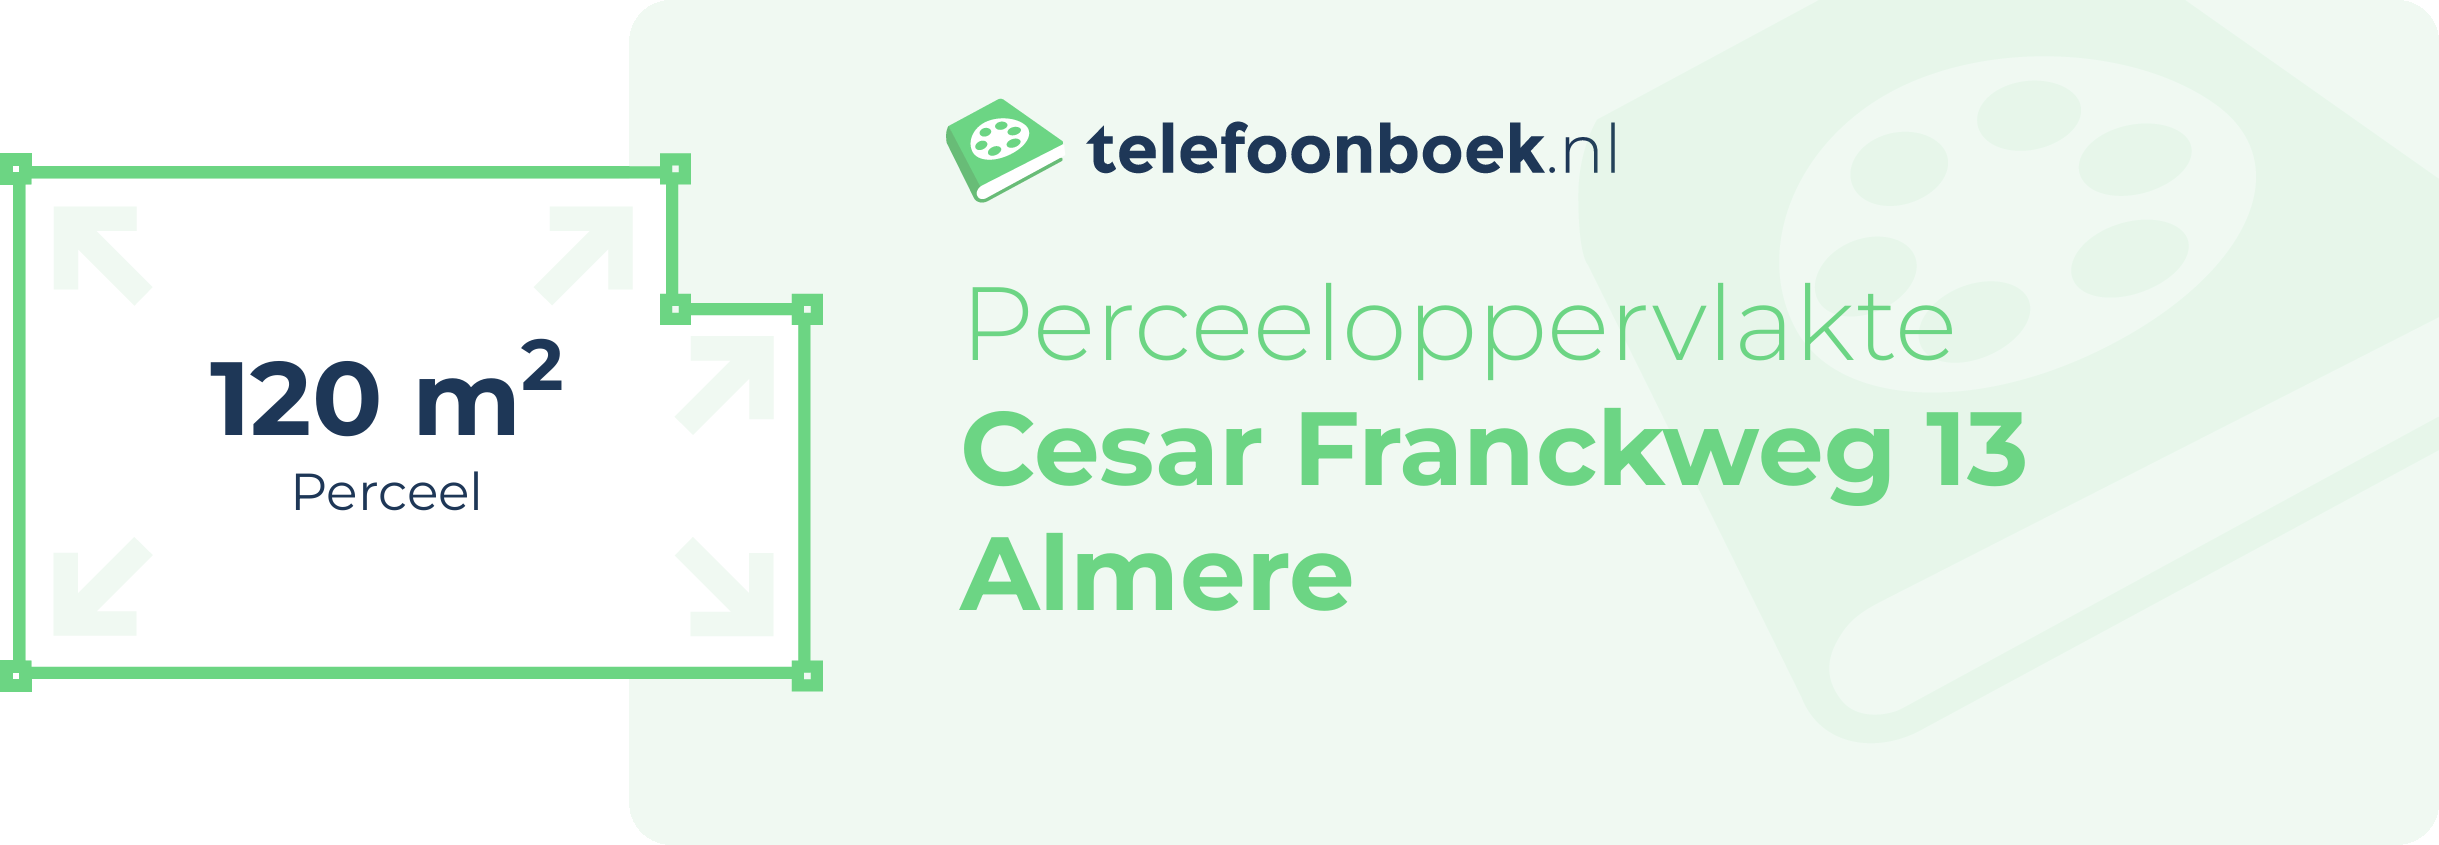 Perceeloppervlakte Cesar Franckweg 13 Almere